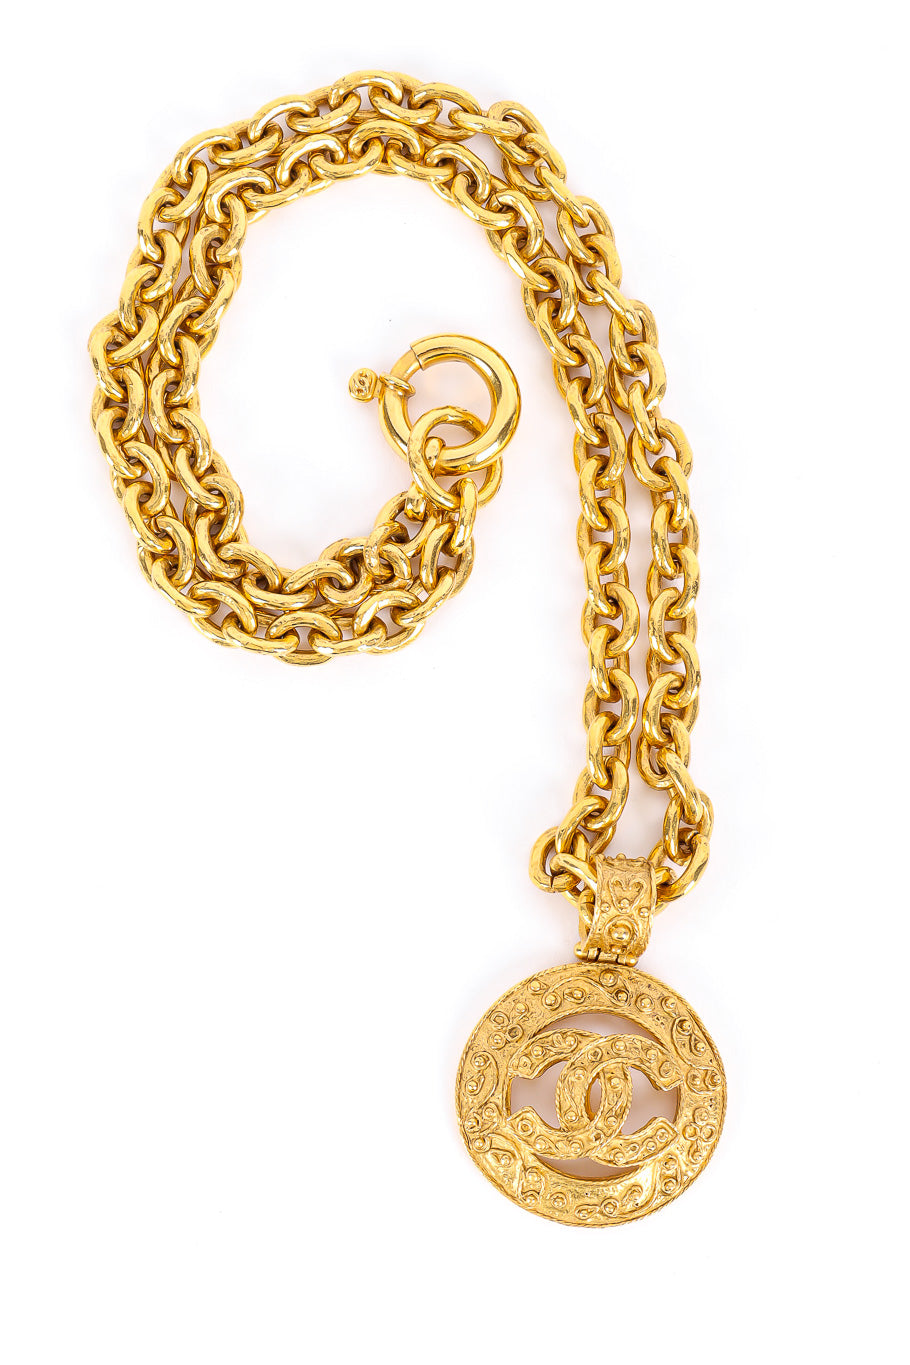 Vintage Chanel Brocade CC Pendant Necklace flat lay @recessla